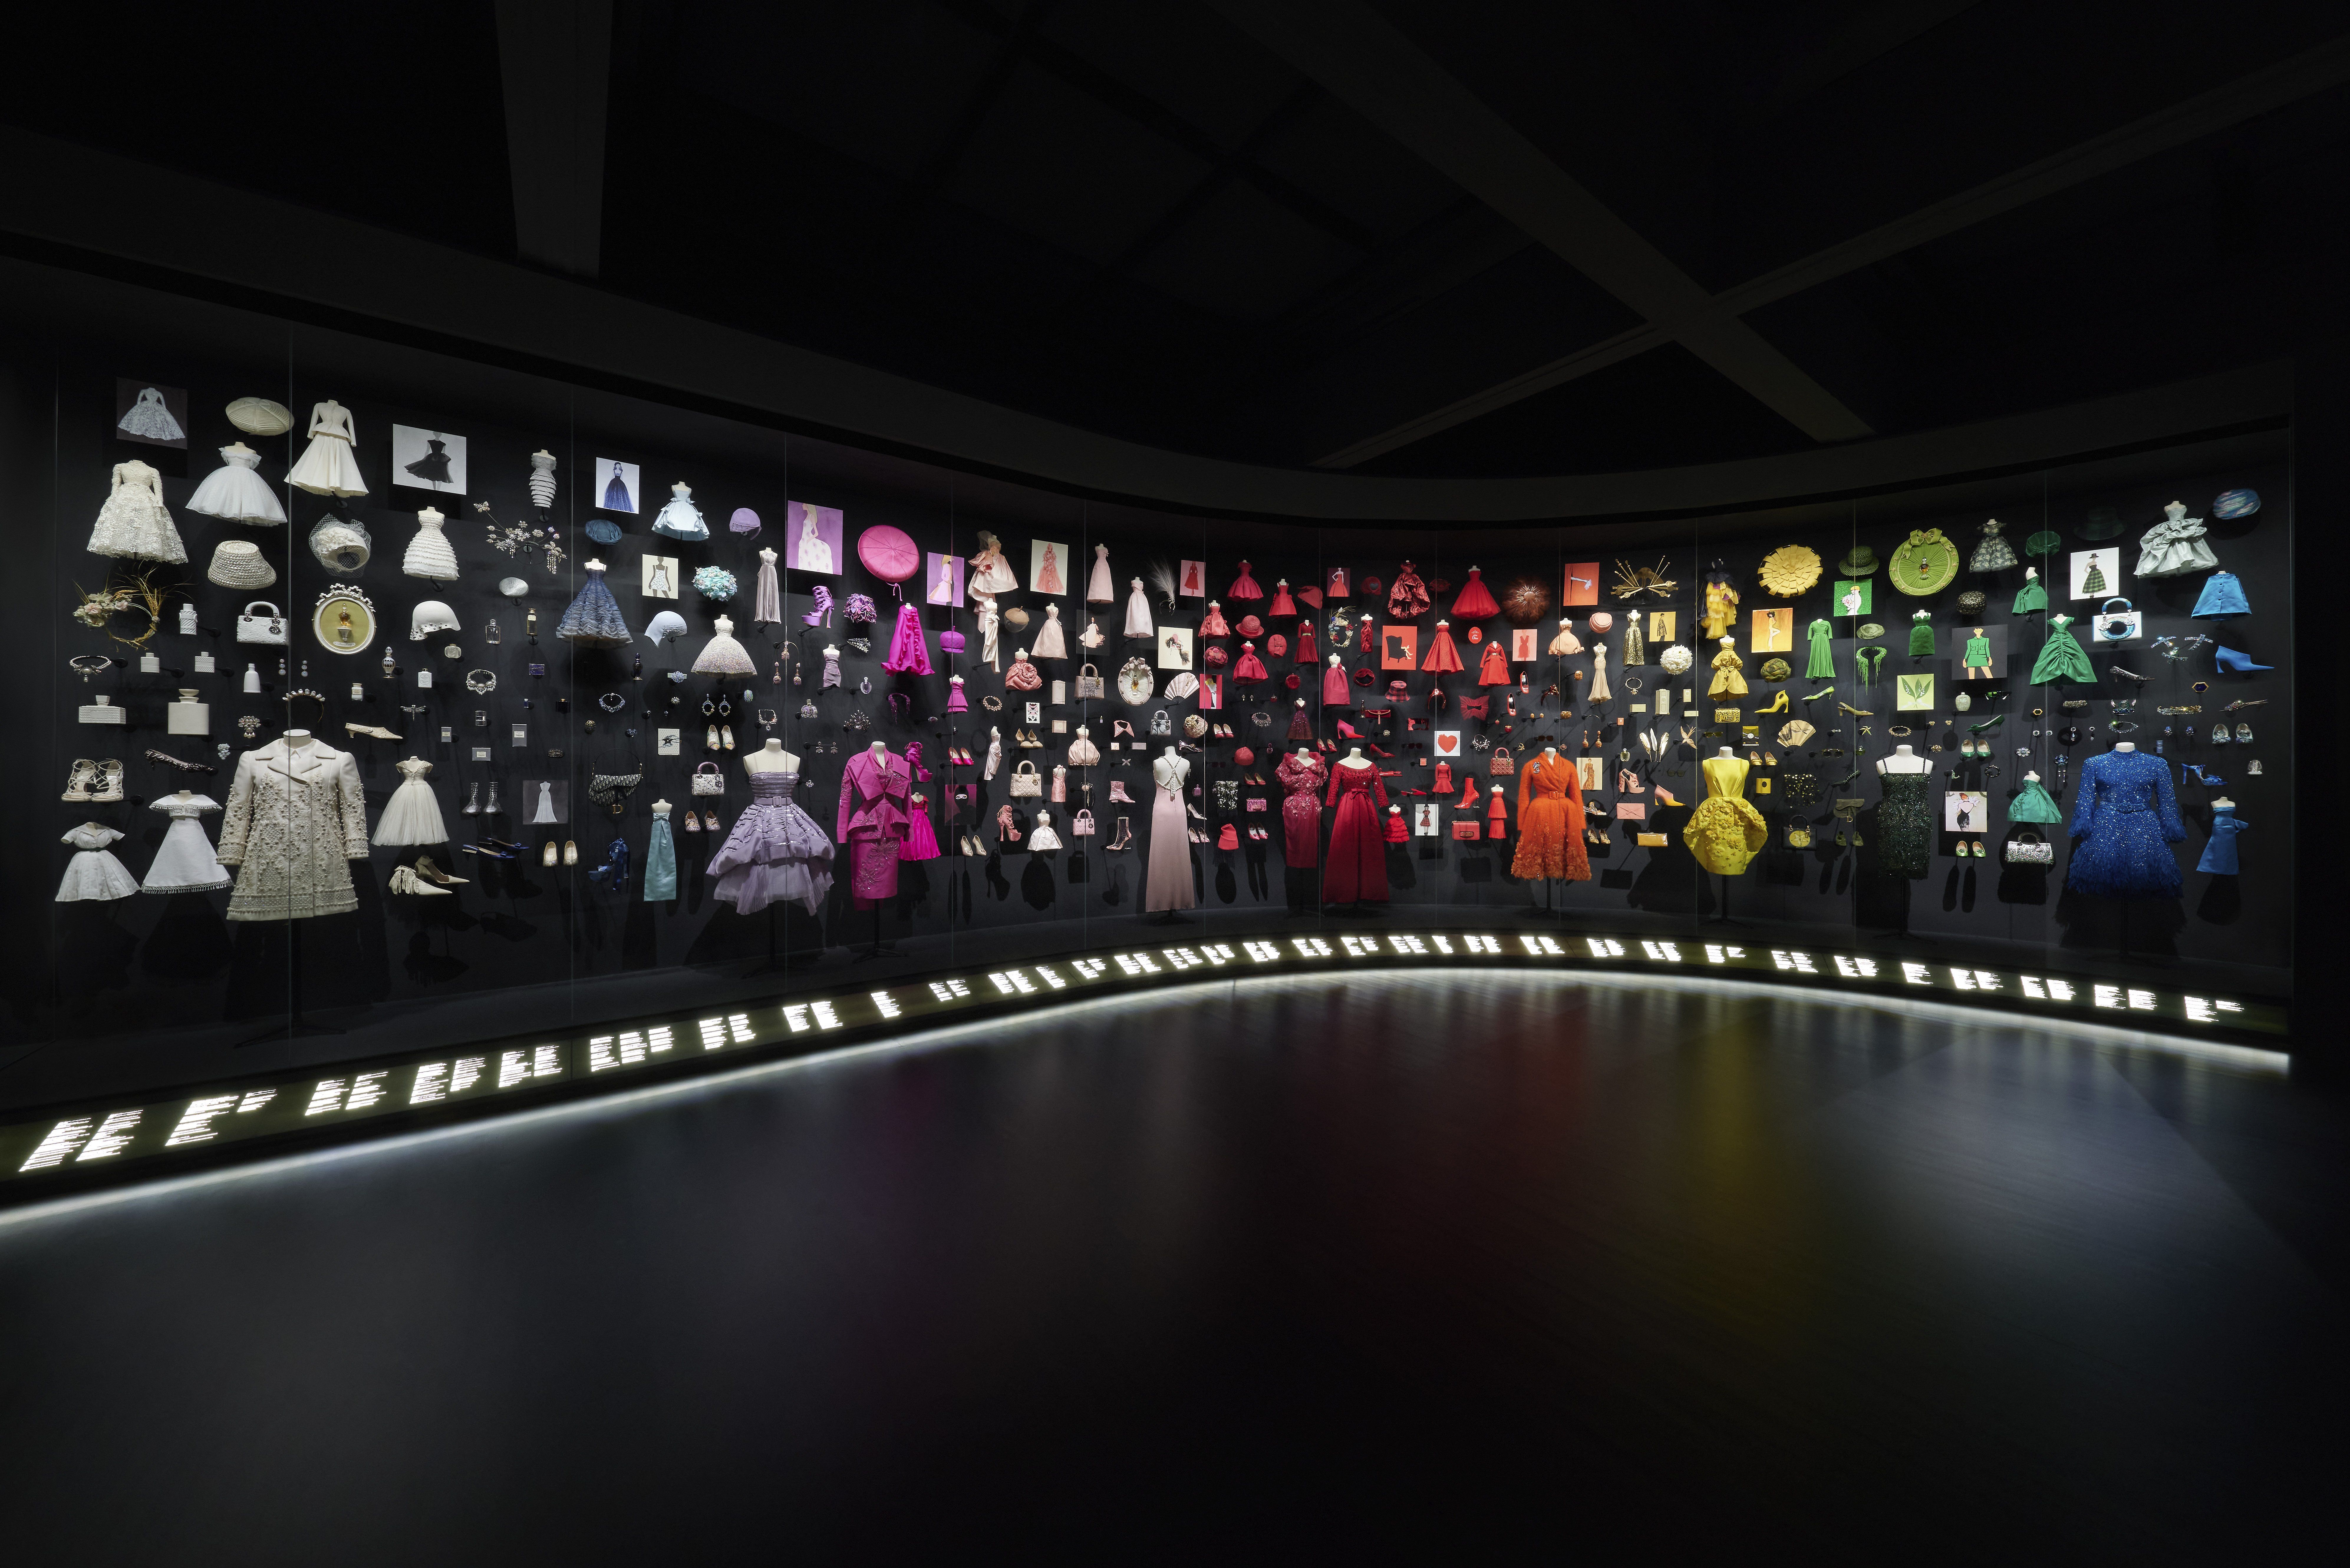 五彩繽紛的珍奇的陳列櫃的Colorama可說是色票控天堂，將所有經典的Dior 服裝與配件以迷你狀態呈現，透過 Joël Andrianomearisoa 的作品，重申Dior配件扮演的重要角色，包含化妝品、香水、以及 Stephen Jones 的帽飾。 並利用各種配色展現出迷人而壯觀的展覽空間，也表現出品牌對於色彩的多變與精準掌控度